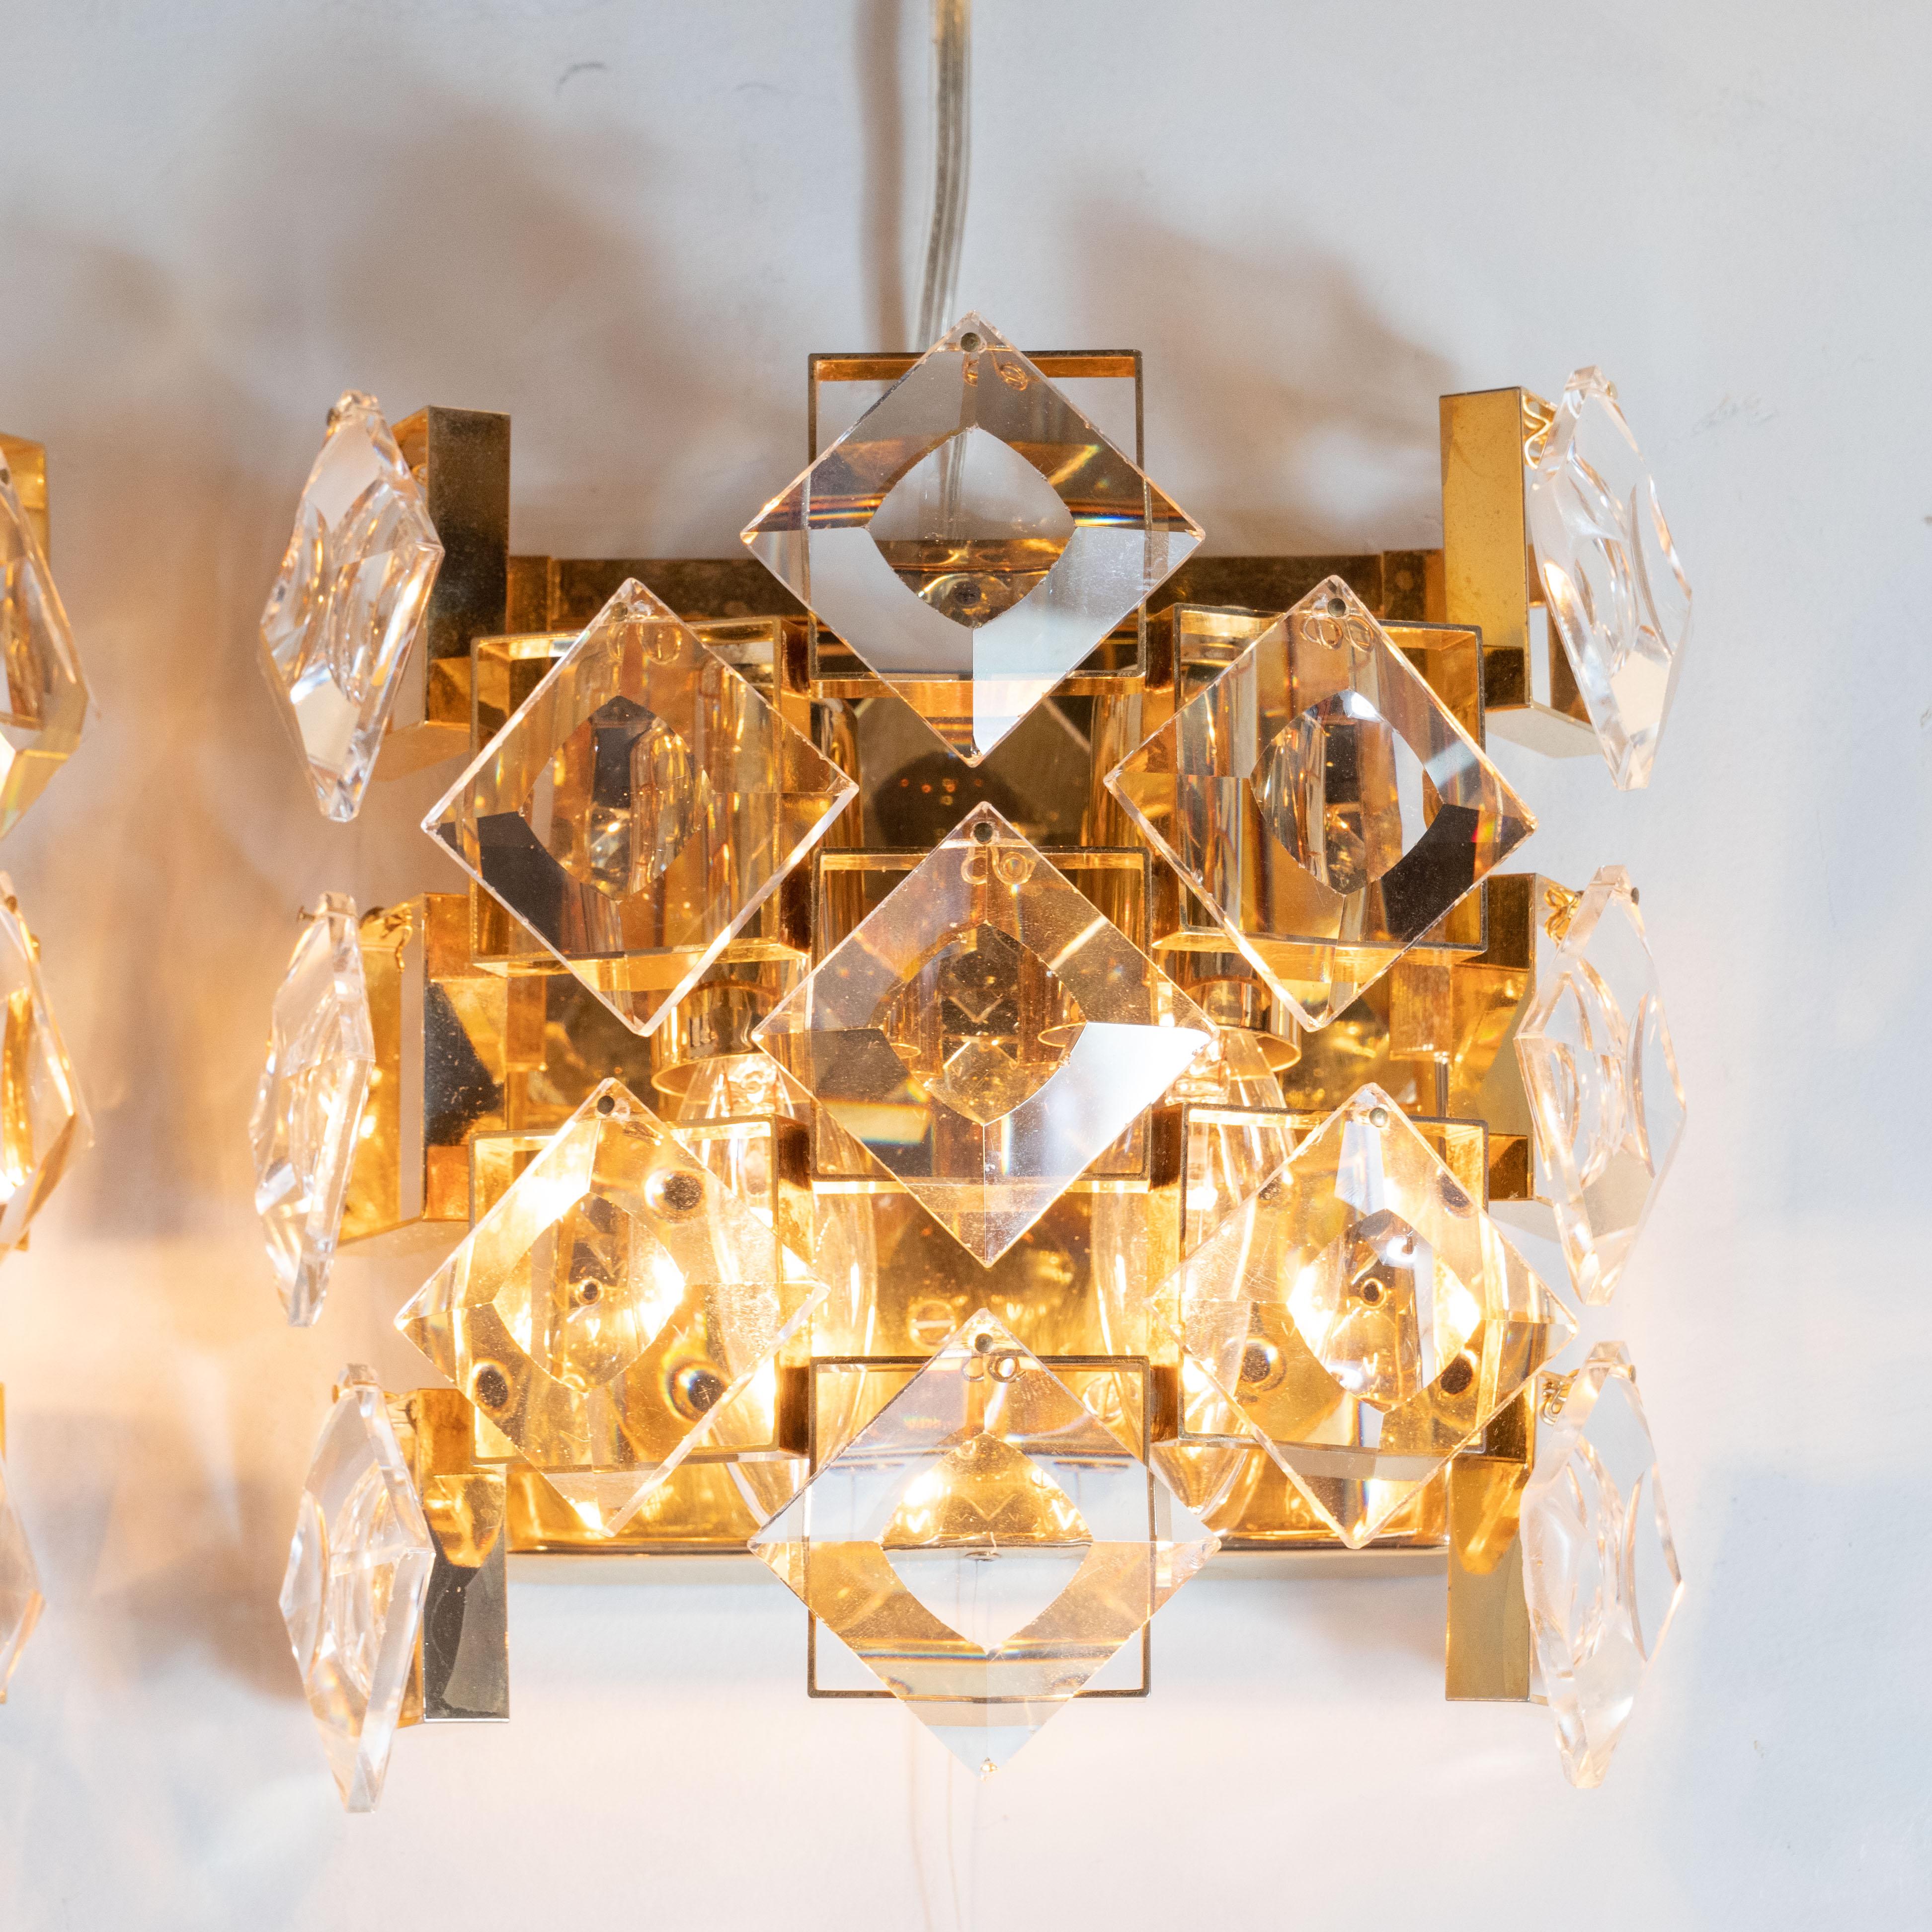 Cette paire d'appliques glamour a été réalisée en Autriche, vers 1960. Elles présentent des cadres carrés en laiton poli avec des cristaux translucides biseautés en forme de diamant créant des murs en mosaïque sur les trois côtés exposés. Ces